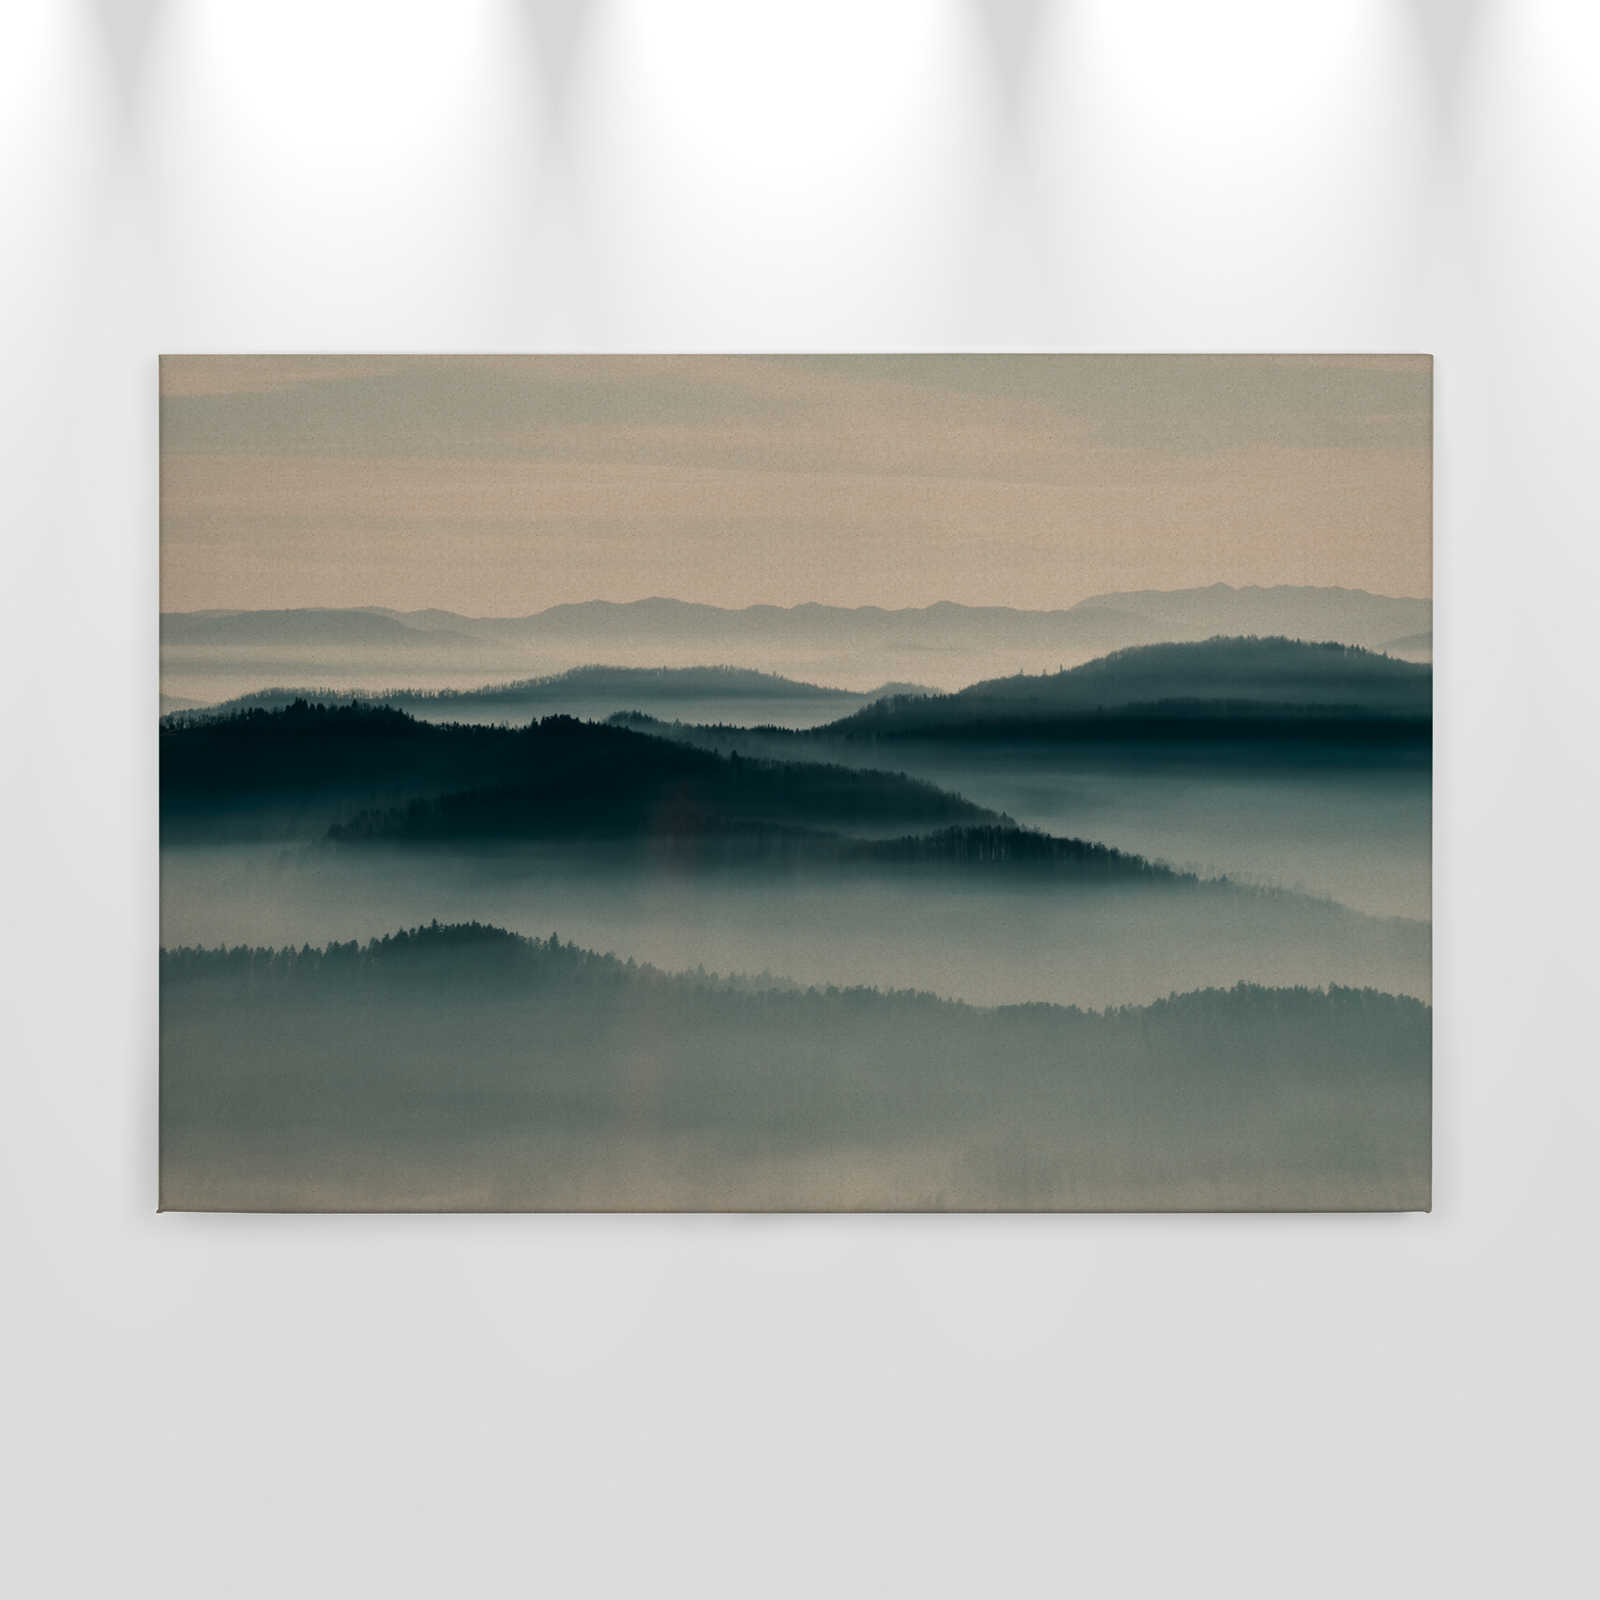             Horizon 1 - Canvas schilderij met mist landschap, natuur Sky Line in kartonnen structuur - 0.90 m x 0.60 m
        